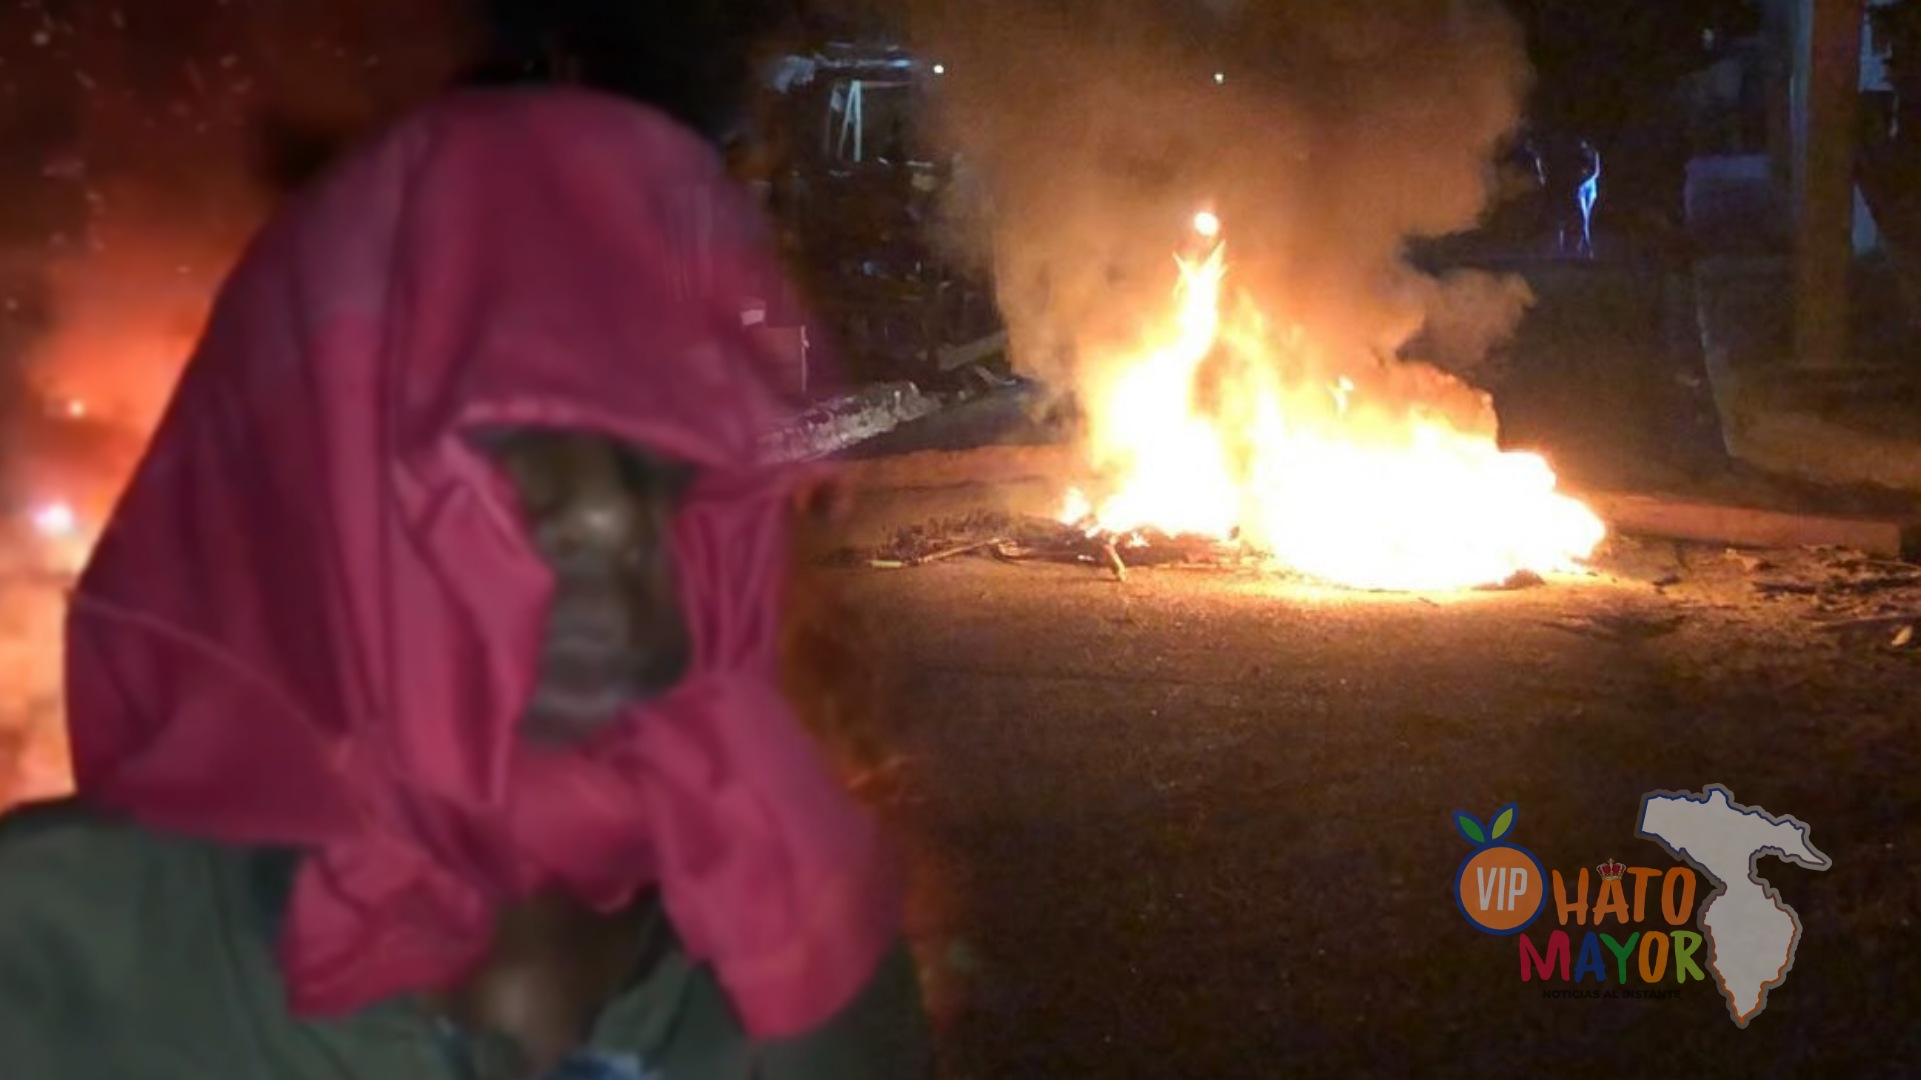 (VIDEO) Habitantes de Villa Ortega queman neumáticos en reclamo de energía eléctrica en Hato Mayor